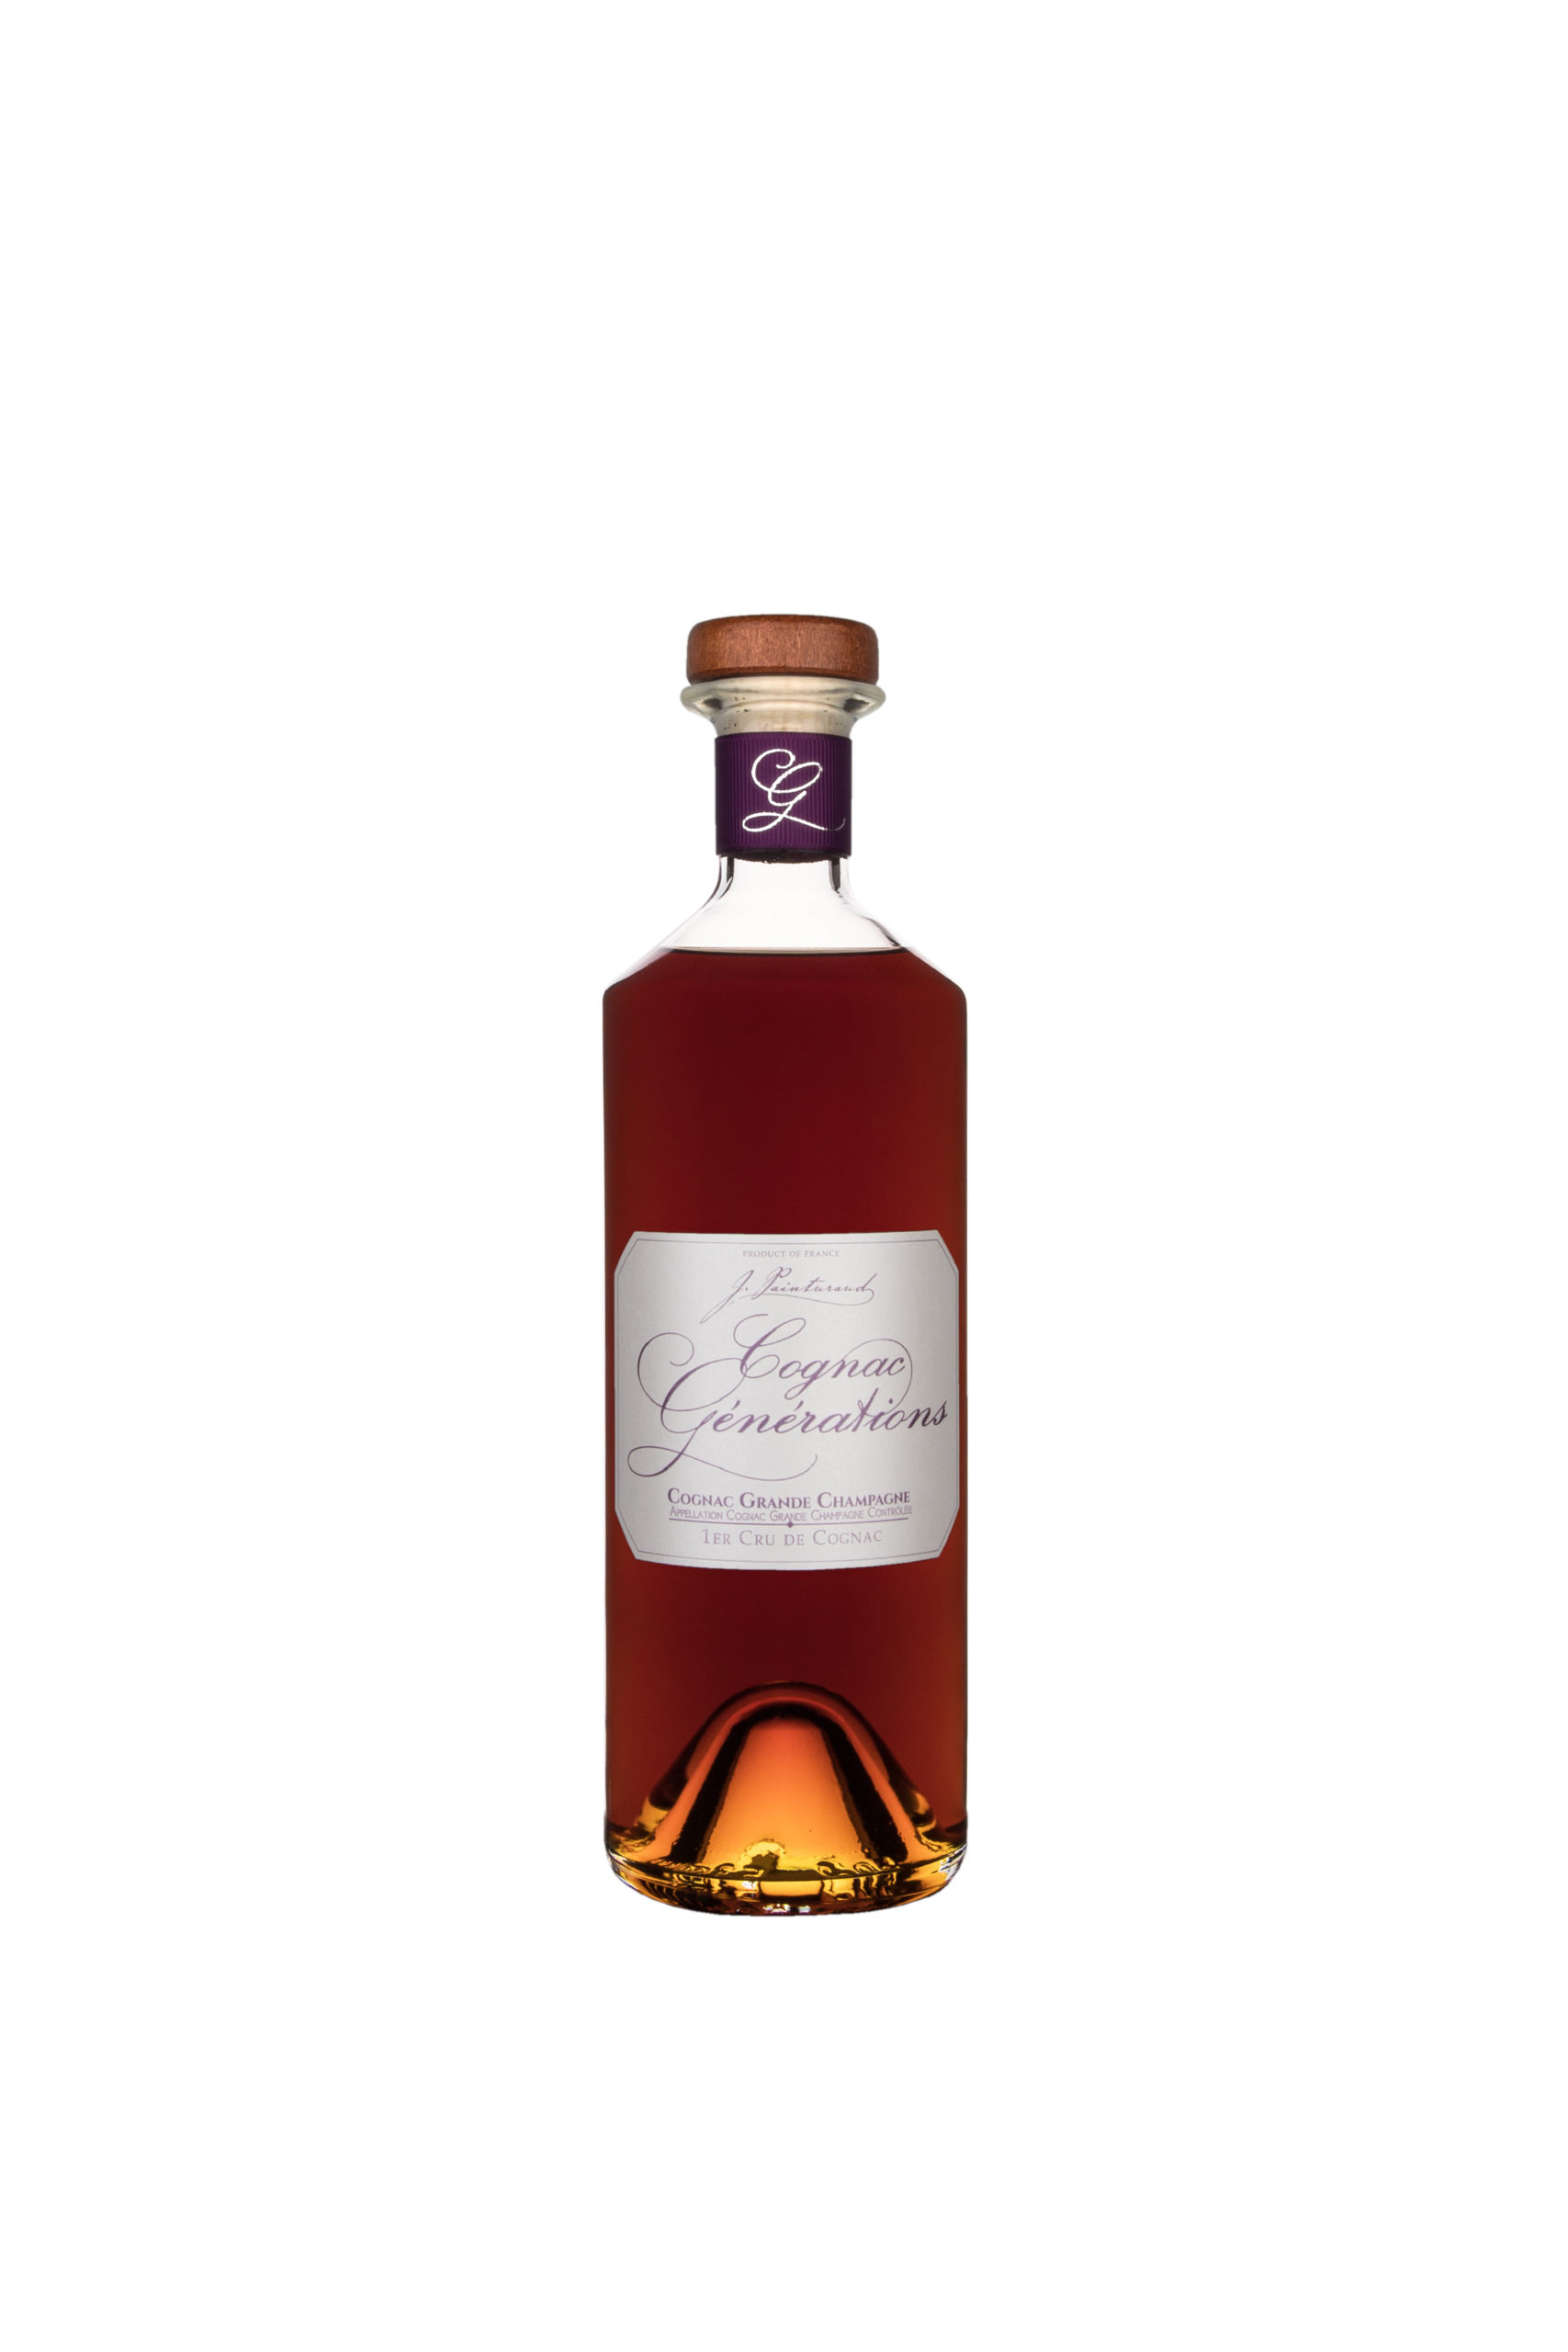 Old Cognac "Générations"